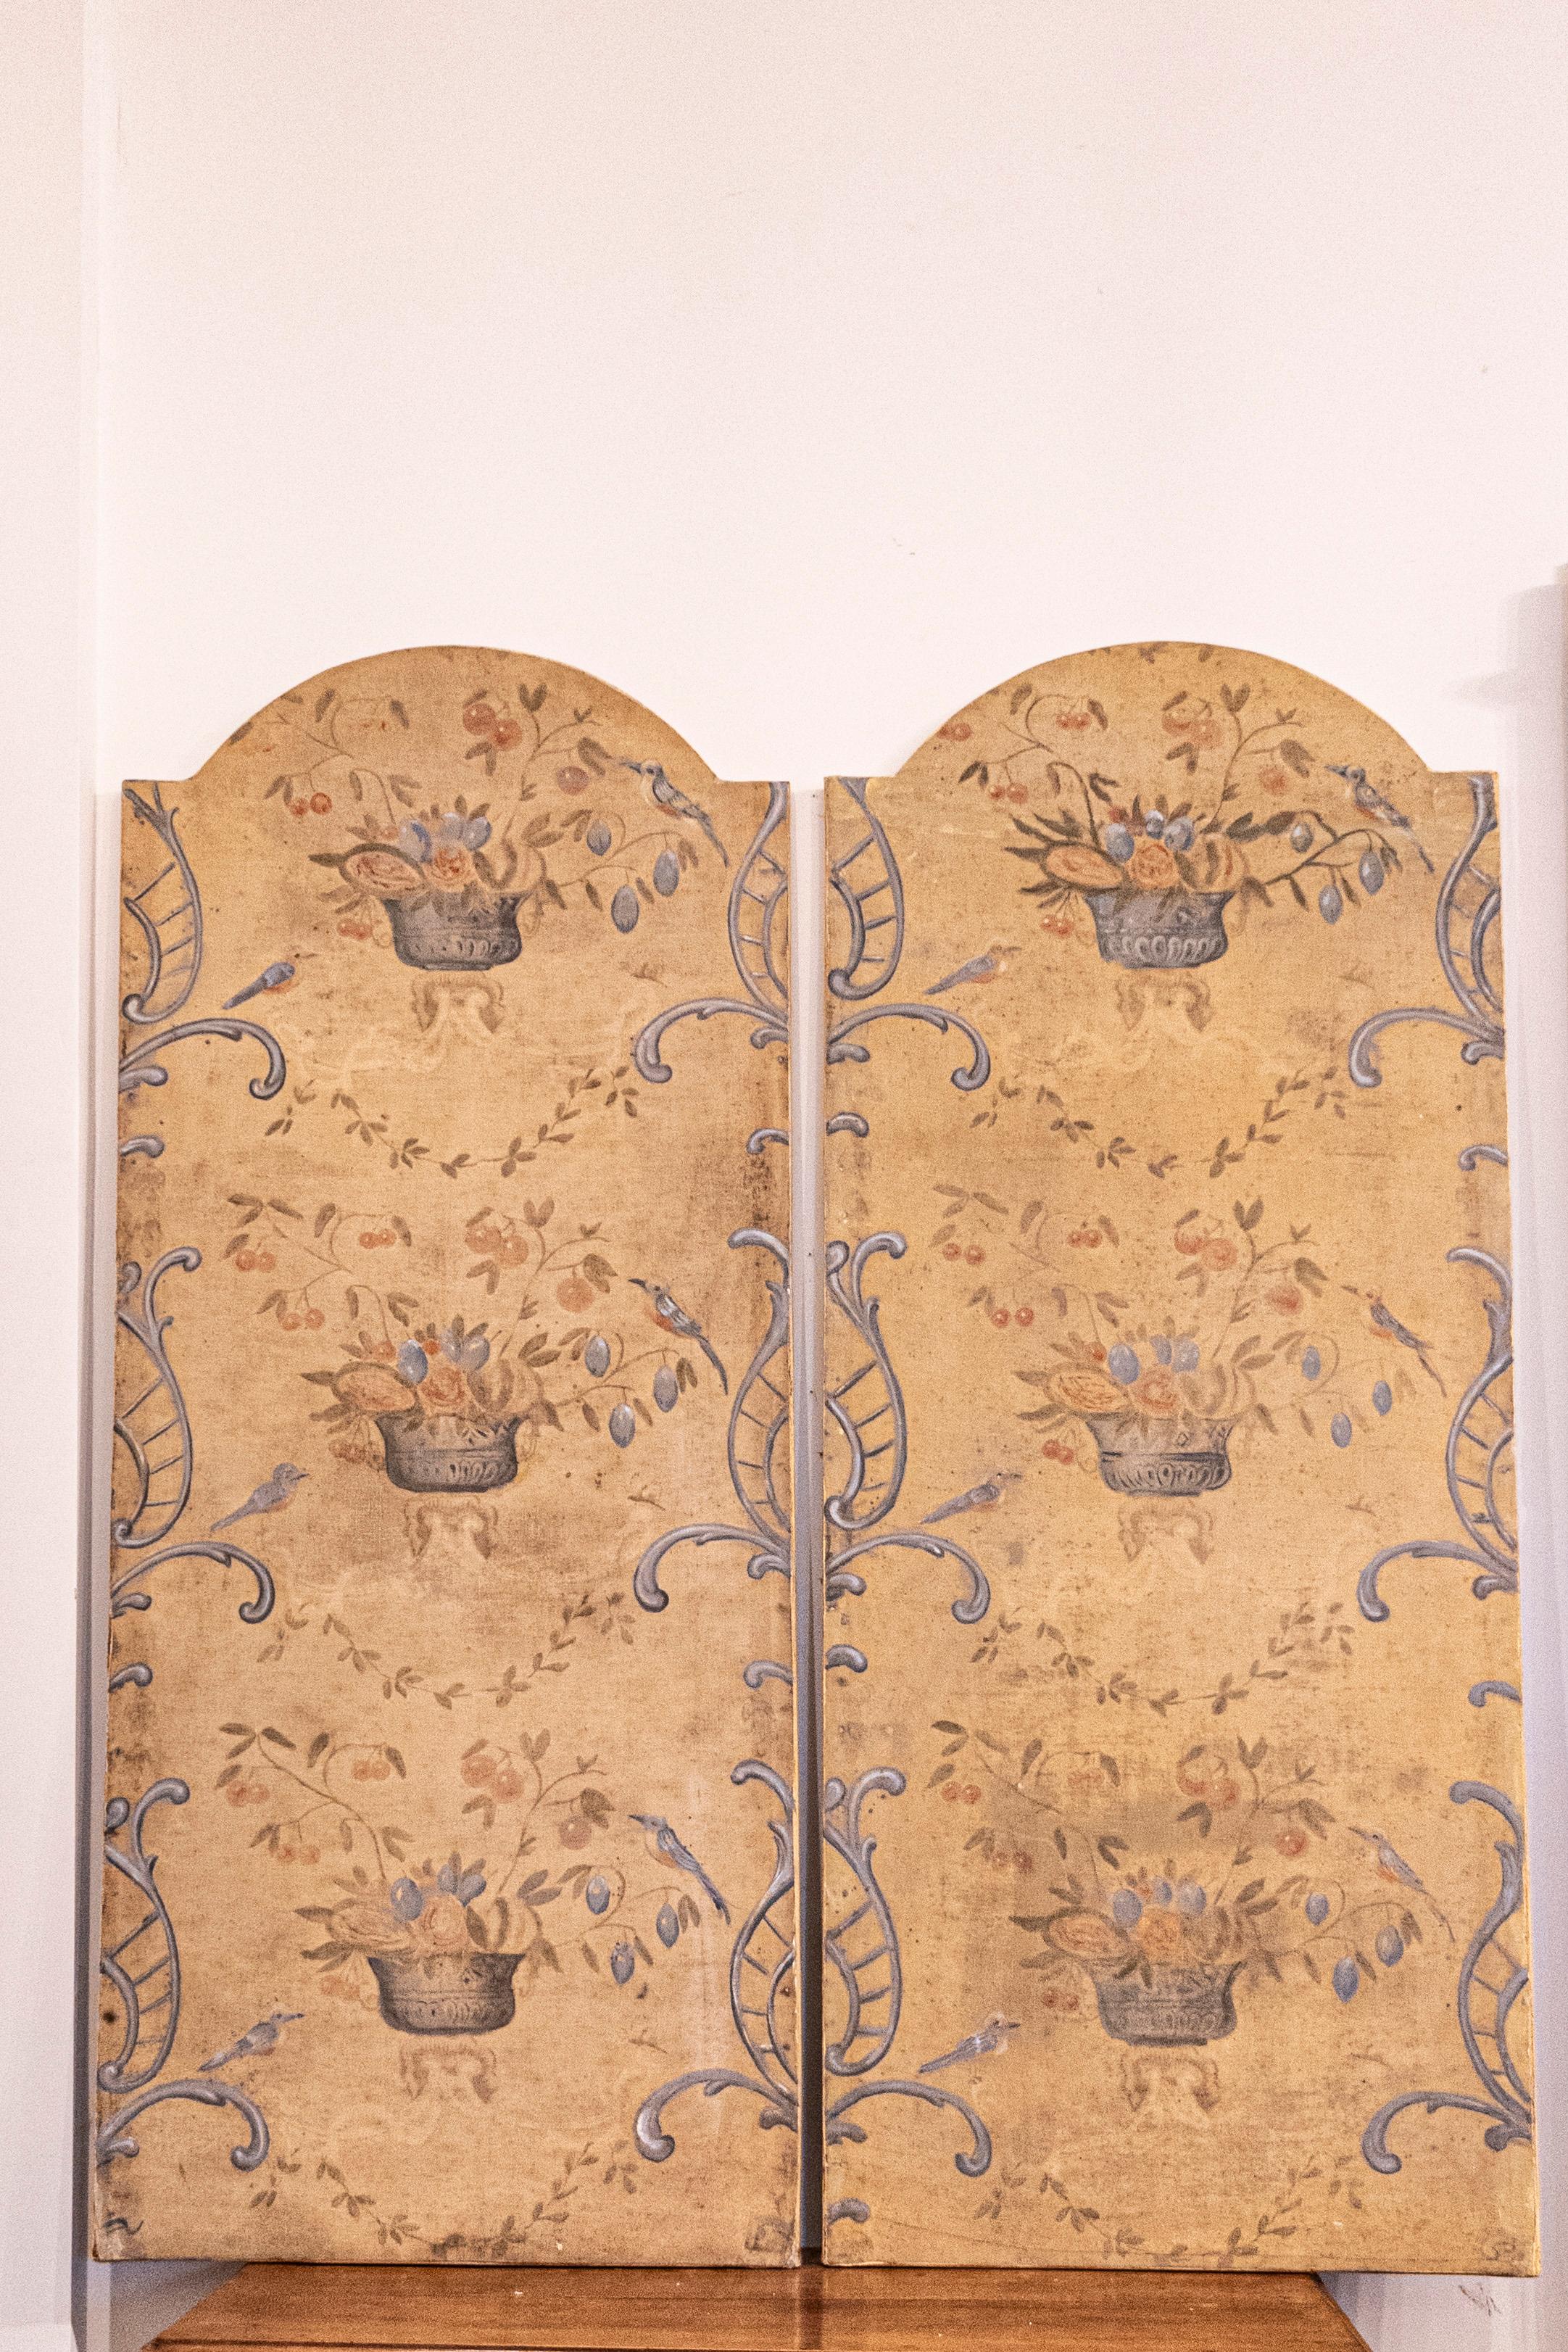 Ein Paar französische handgemalte dekorative Tafeln aus dem 18. Jahrhundert mit silbernen Vasen und Vögeln im Blattwerk. Dieses bezaubernde Paar französischer, handgemalter Dekorationspaneele aus dem 18. Jahrhundert fängt das Wesen der Ruhe der